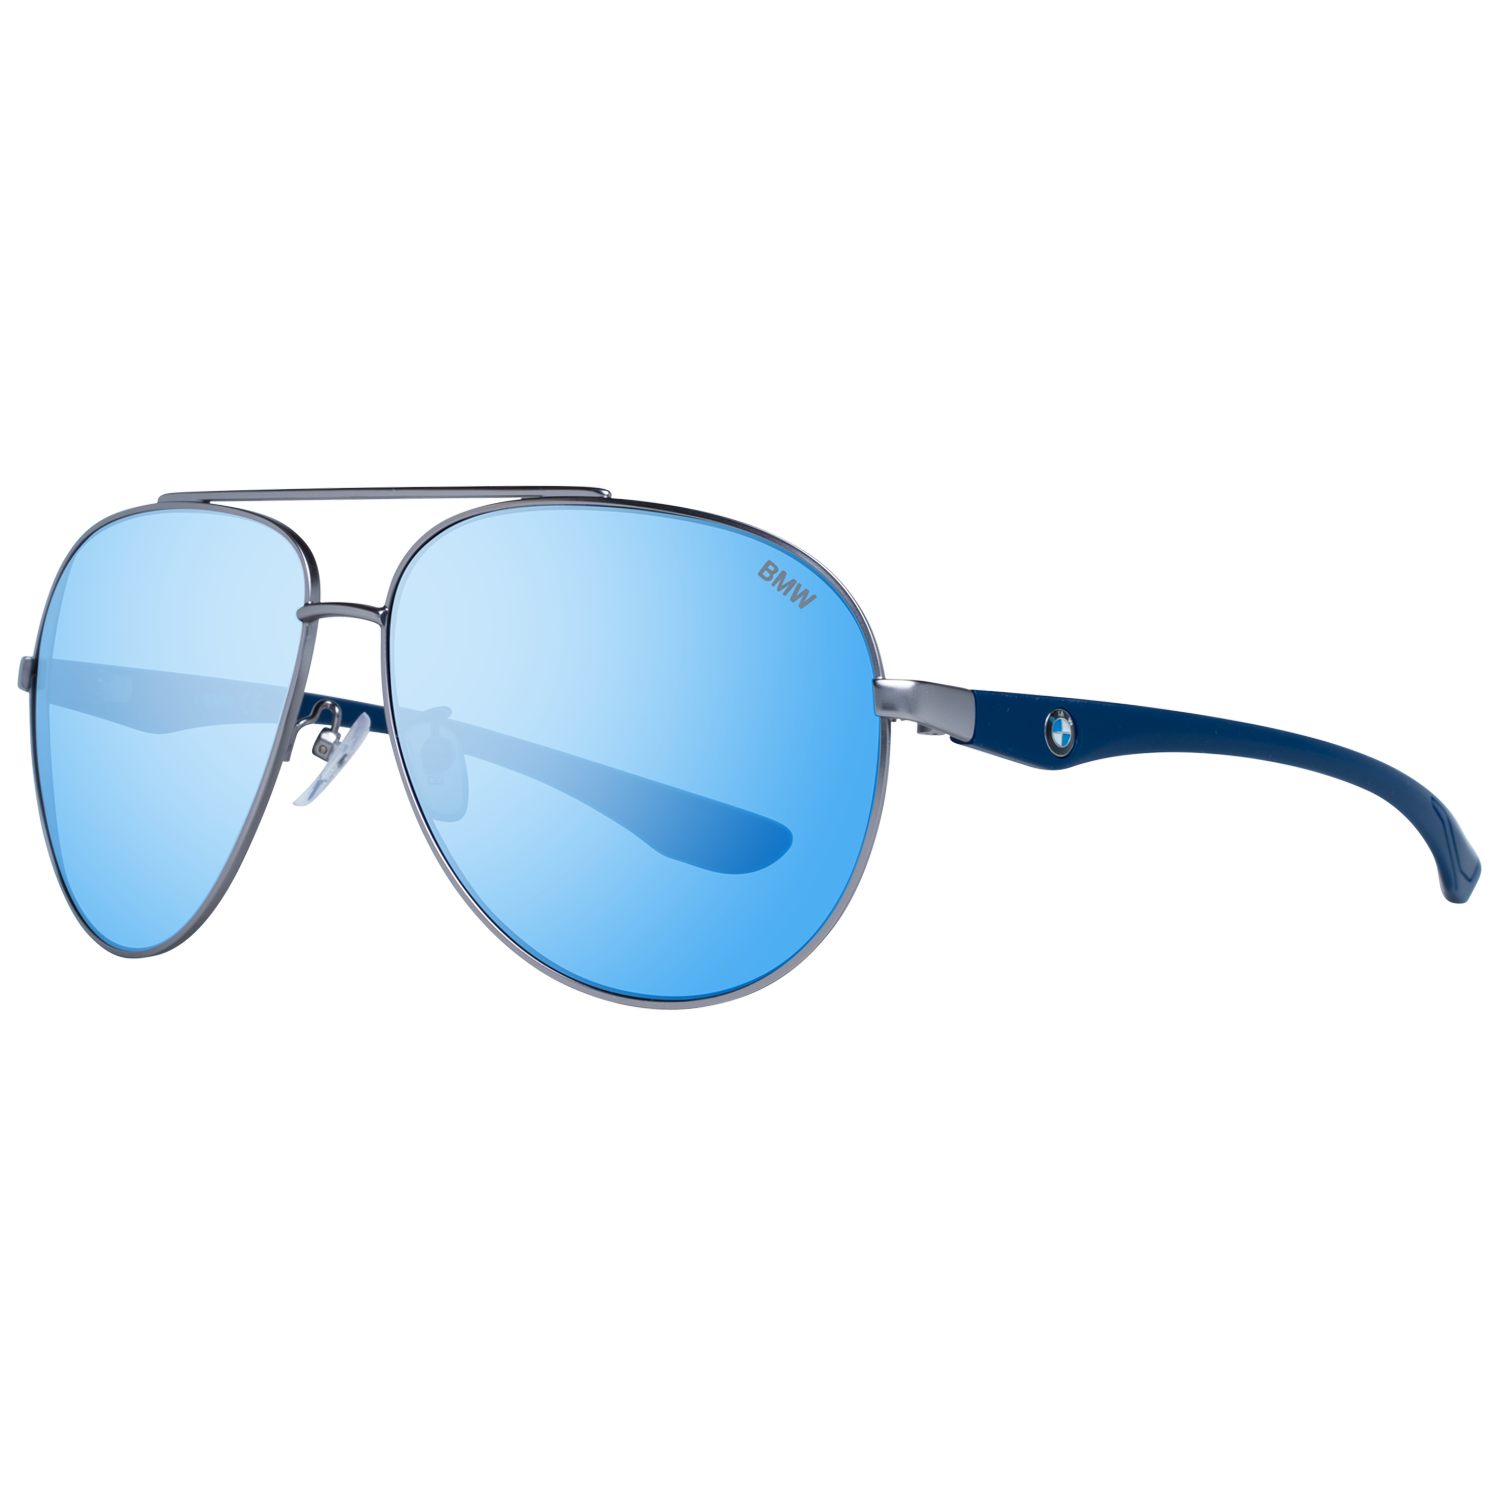 BMW Sunglasses BMW Sunglasses BW0014 15X 62 Eyeglasses Eyewear UK USA Australia 